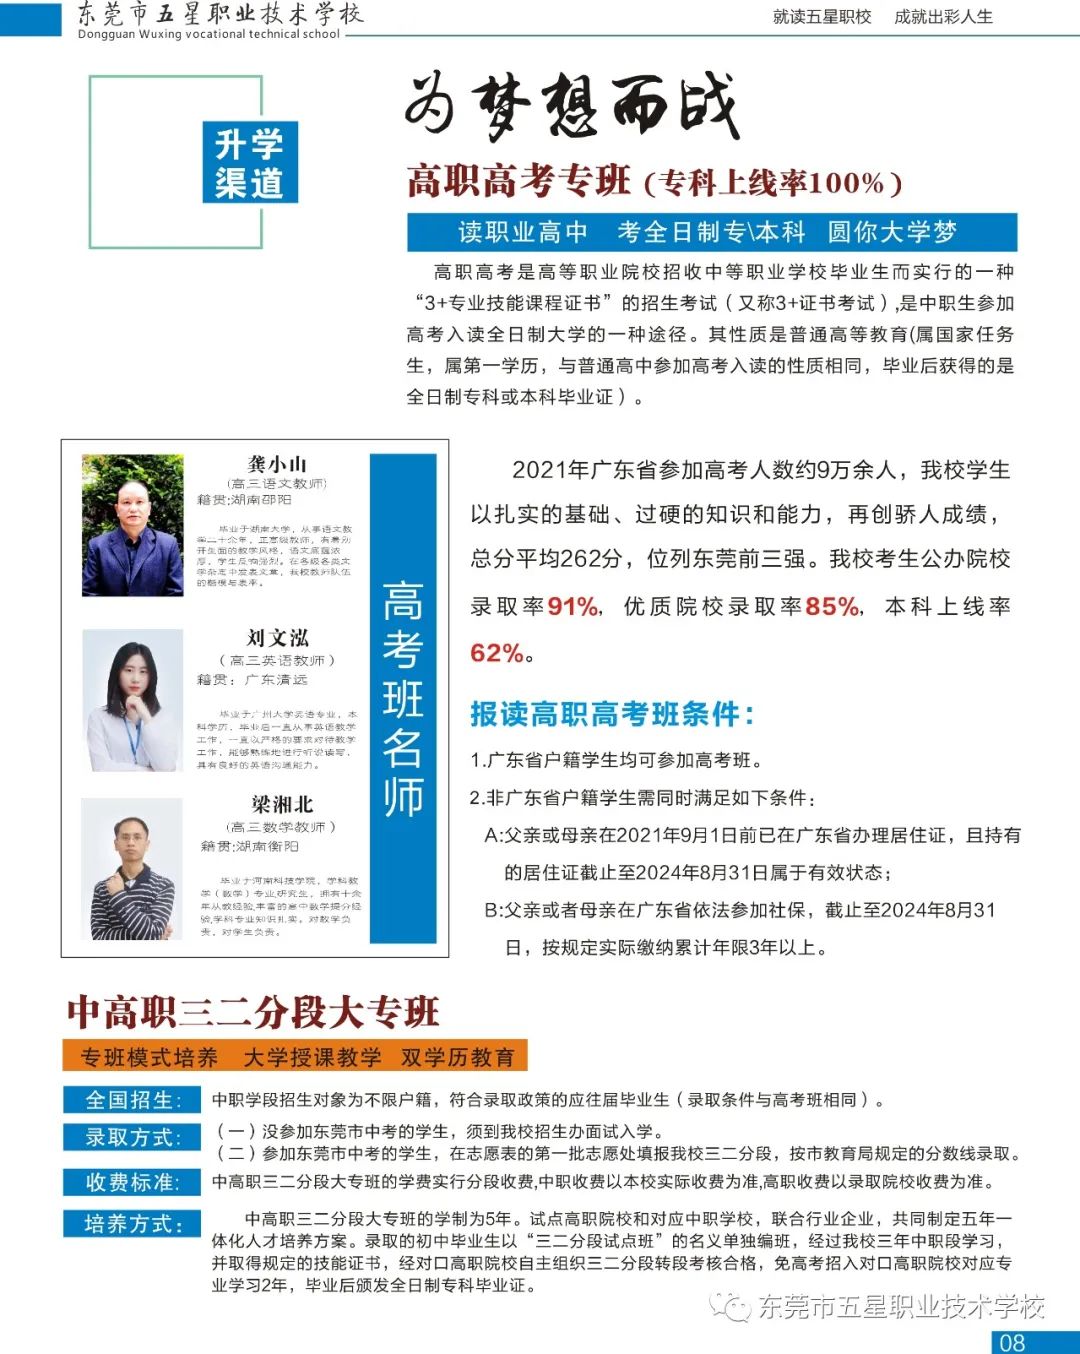 东莞市五星职业技术学校2021招生简章